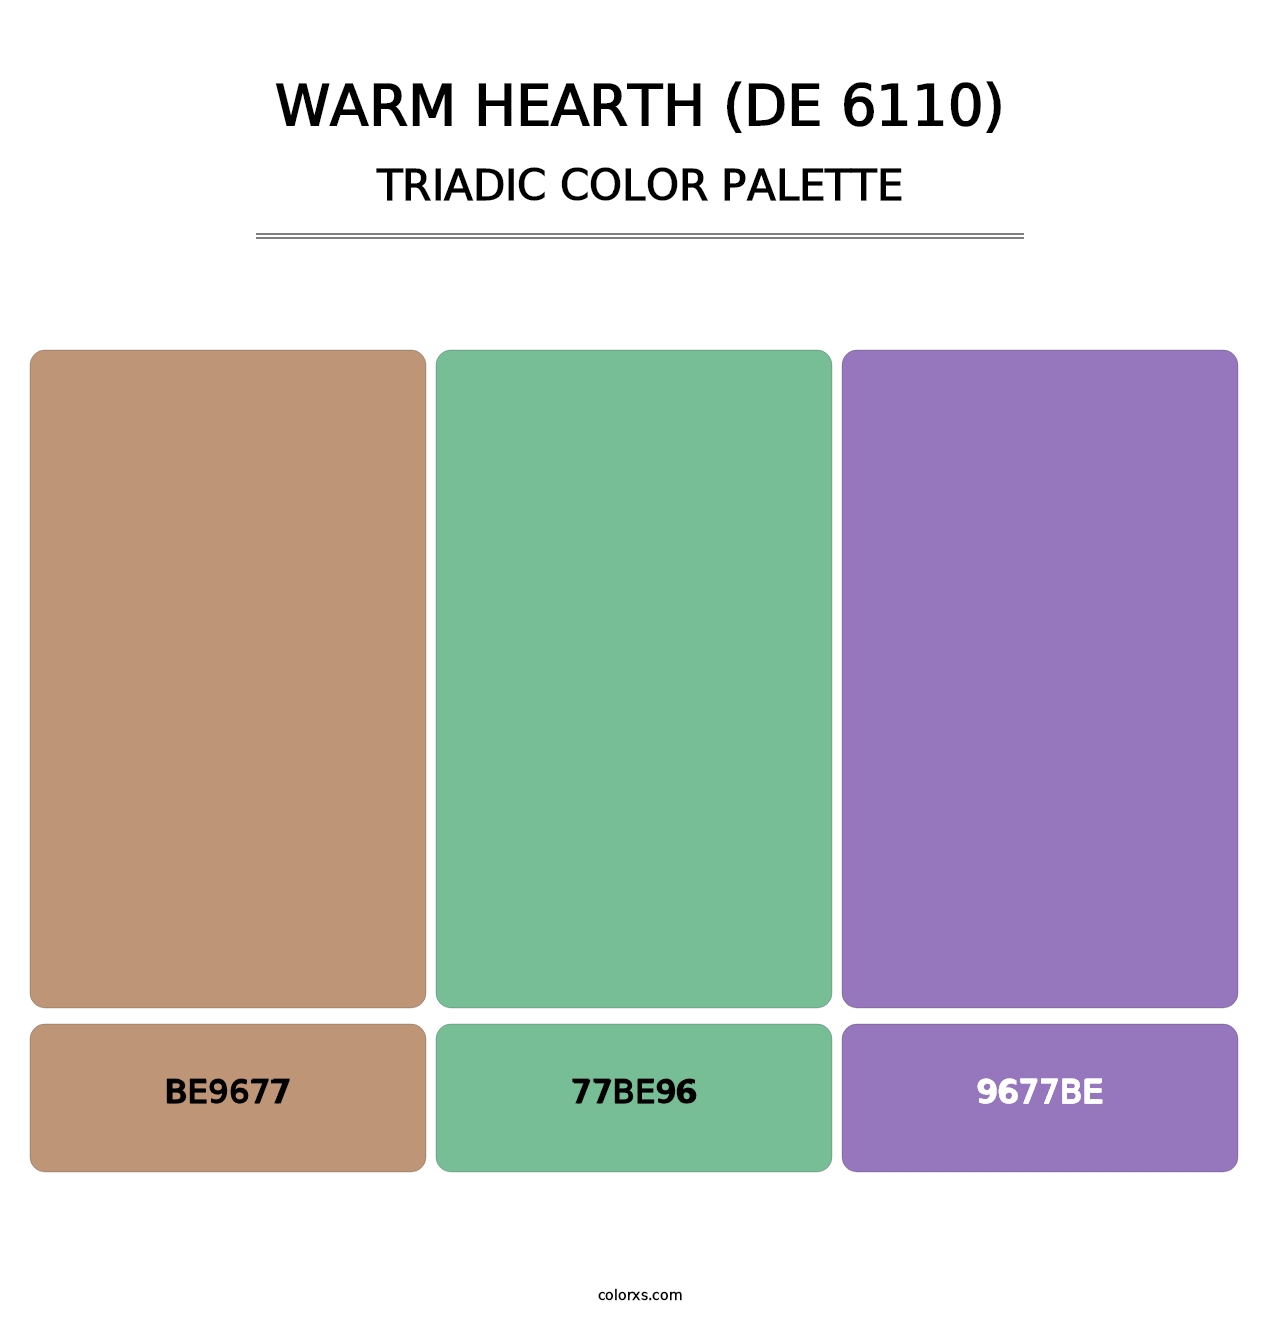 Warm Hearth (DE 6110) - Triadic Color Palette